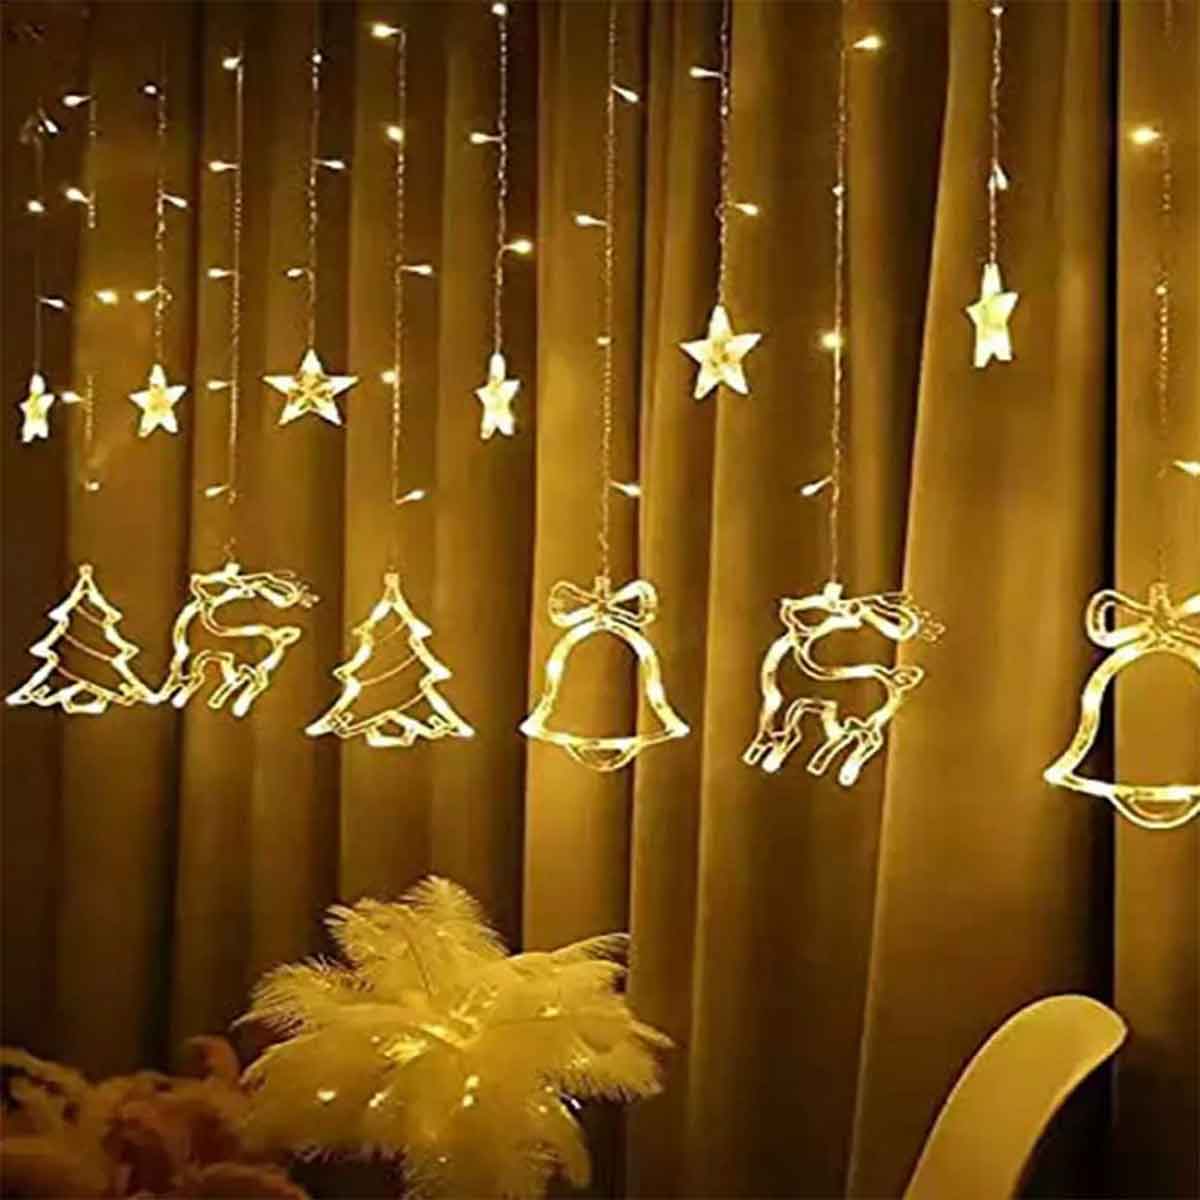 Χριστουγεννιάτικα Φωτάκια 3.6×0.8m Κουρτίνα Αστέρια Καμπάνες Eλάφια Δέντρα BX-025 Θερμό Χρώμα